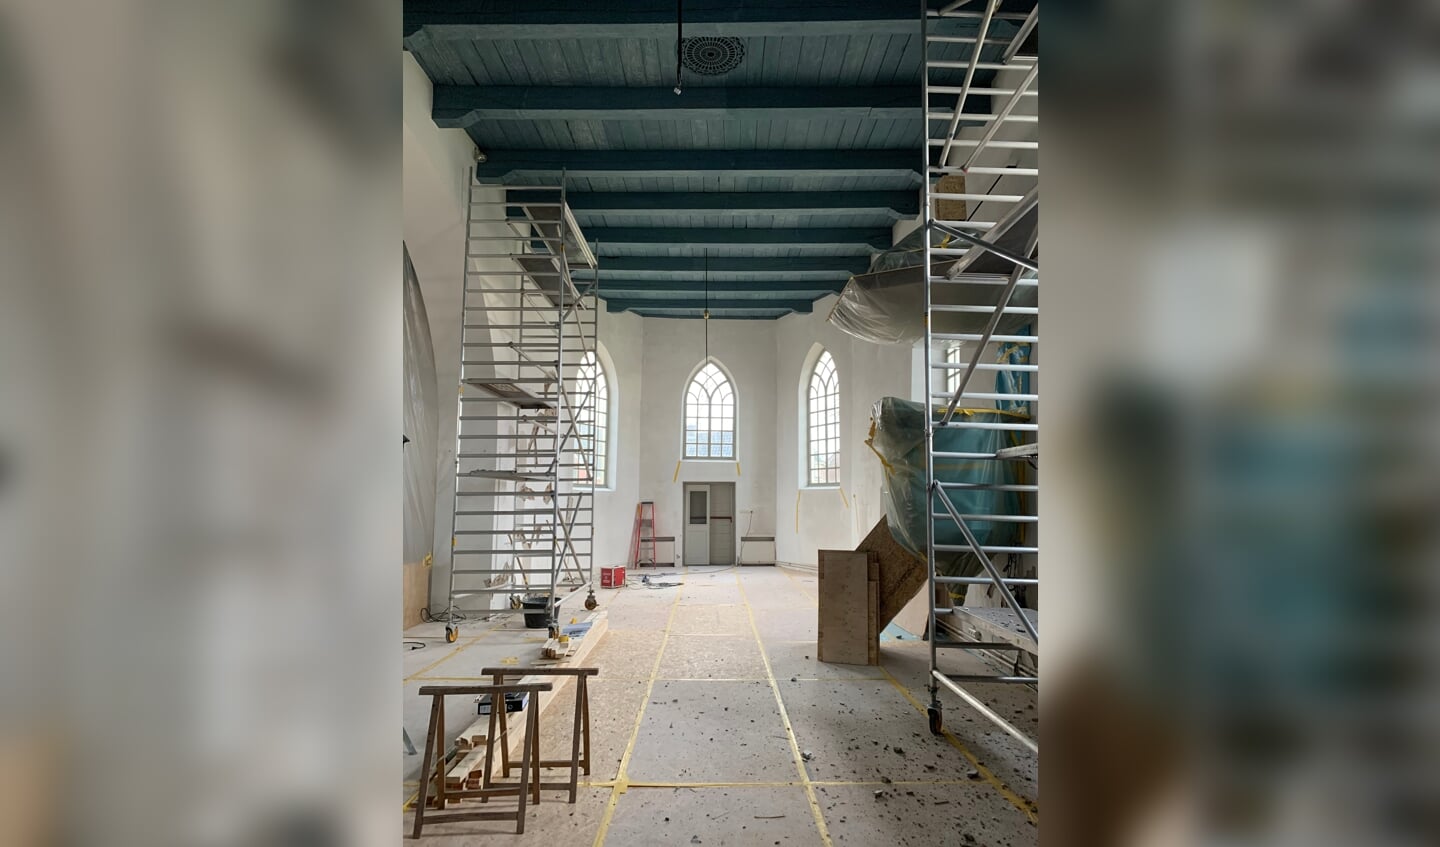 Het interieur van de kerk in Spijk. De steigers staan klaar.